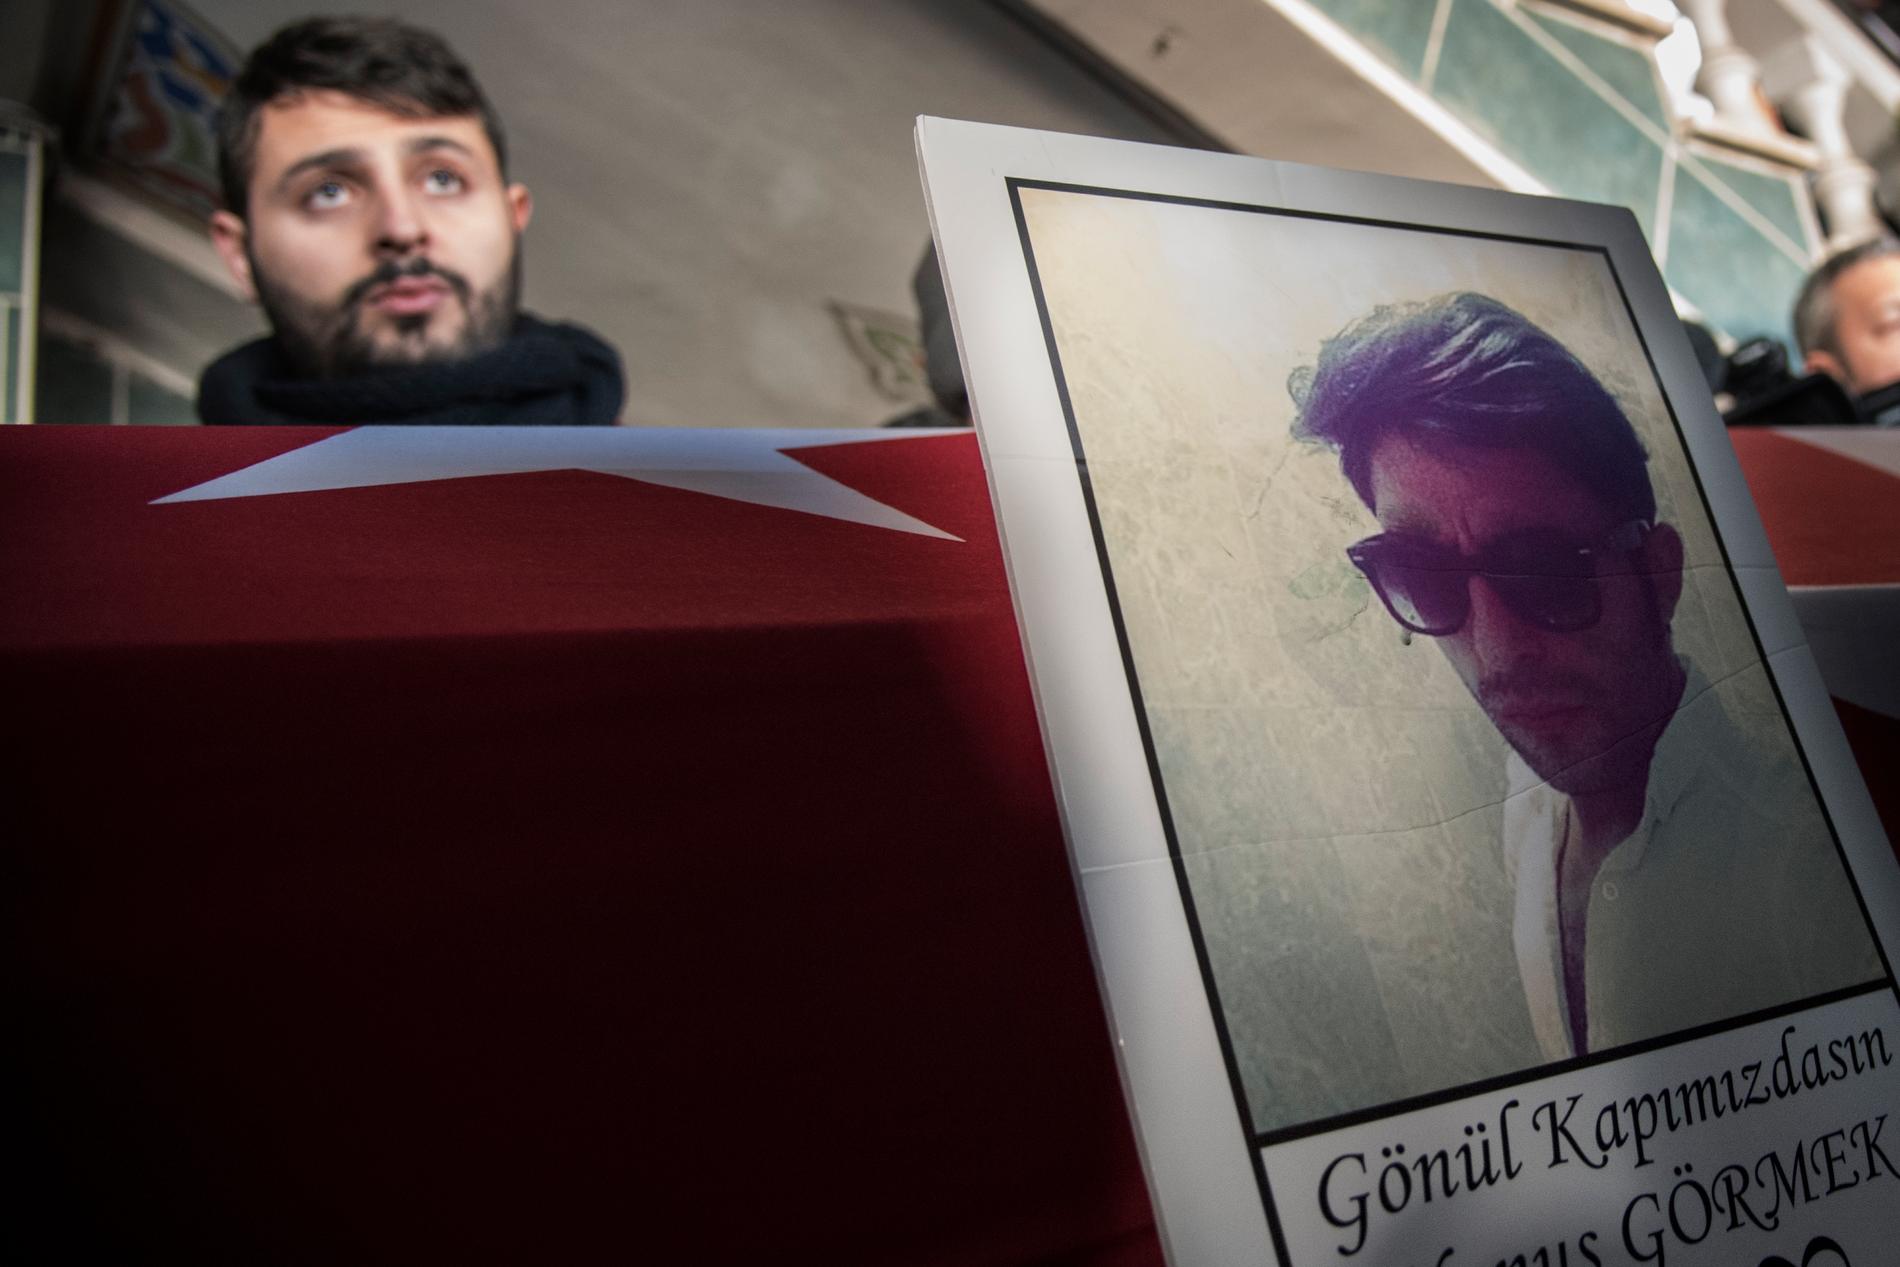 En bild av Yunus vid kistan. I bakgrunden syns en av hans bröder. Yunus Görmek, 23 var ett av den 39 offren i terrorattacken mot nattklubben Reina.